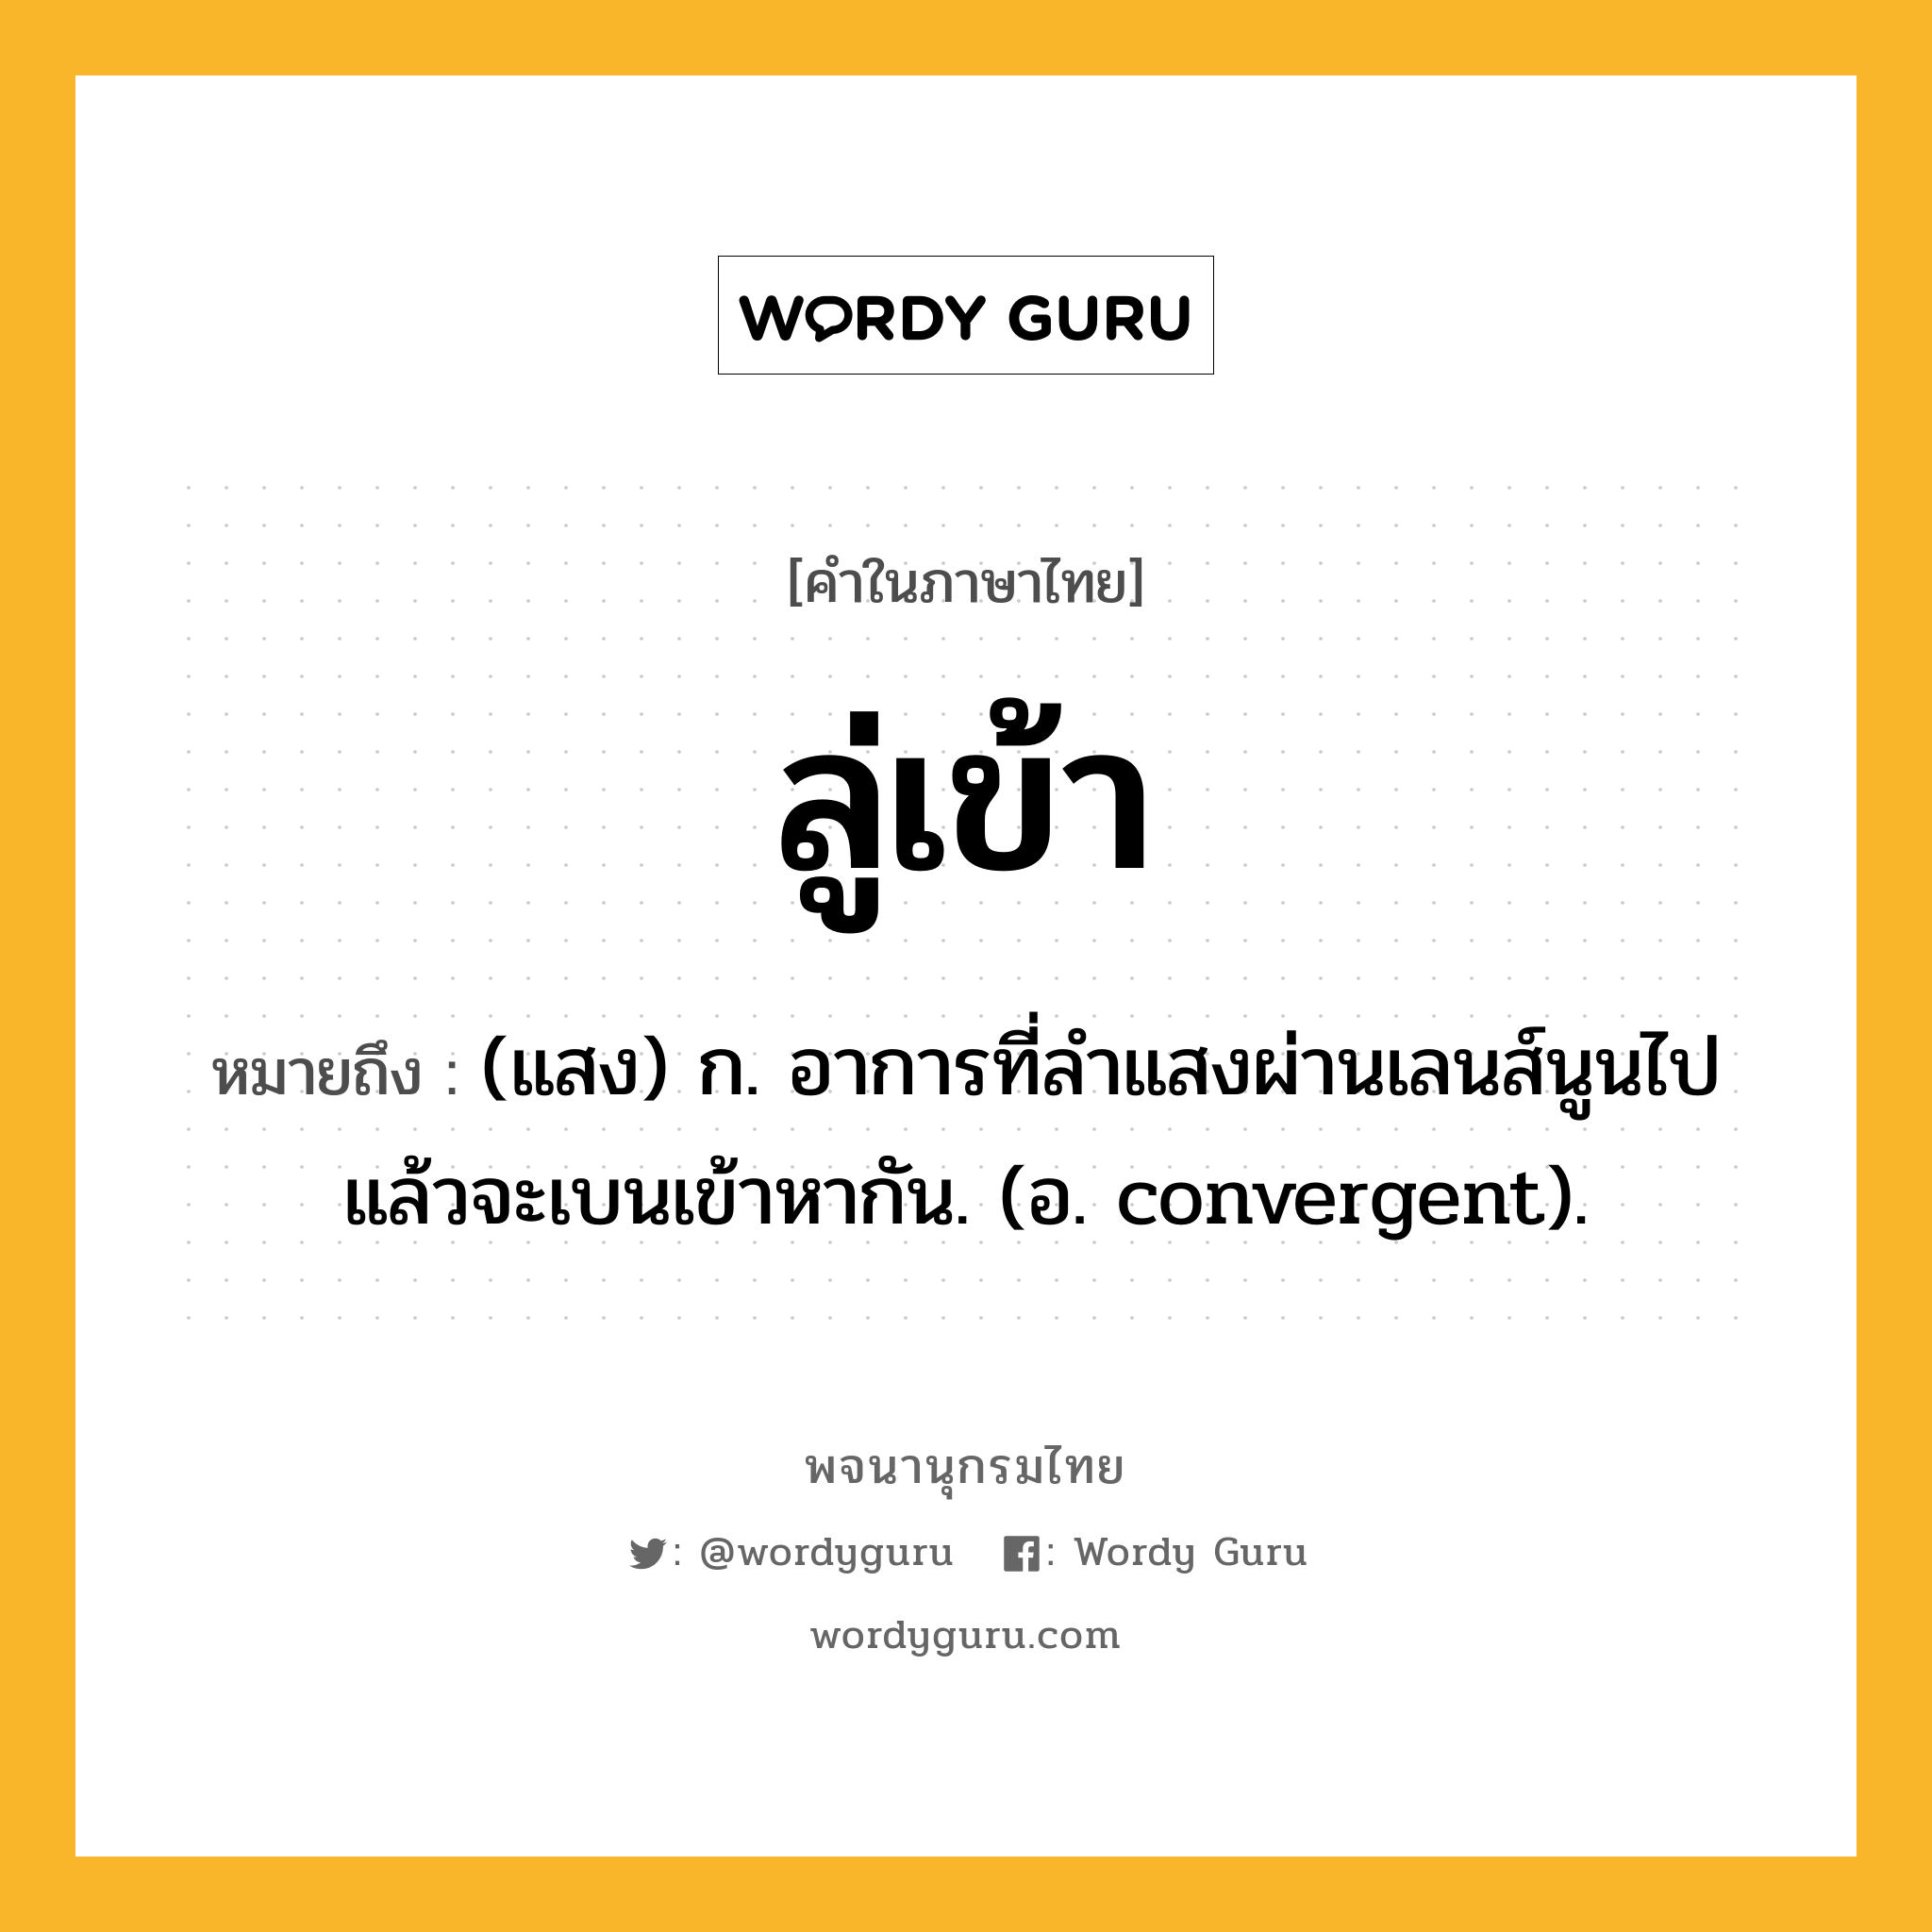 ลู่เข้า หมายถึงอะไร?, คำในภาษาไทย ลู่เข้า หมายถึง (แสง) ก. อาการที่ลำแสงผ่านเลนส์นูนไปแล้วจะเบนเข้าหากัน. (อ. convergent).